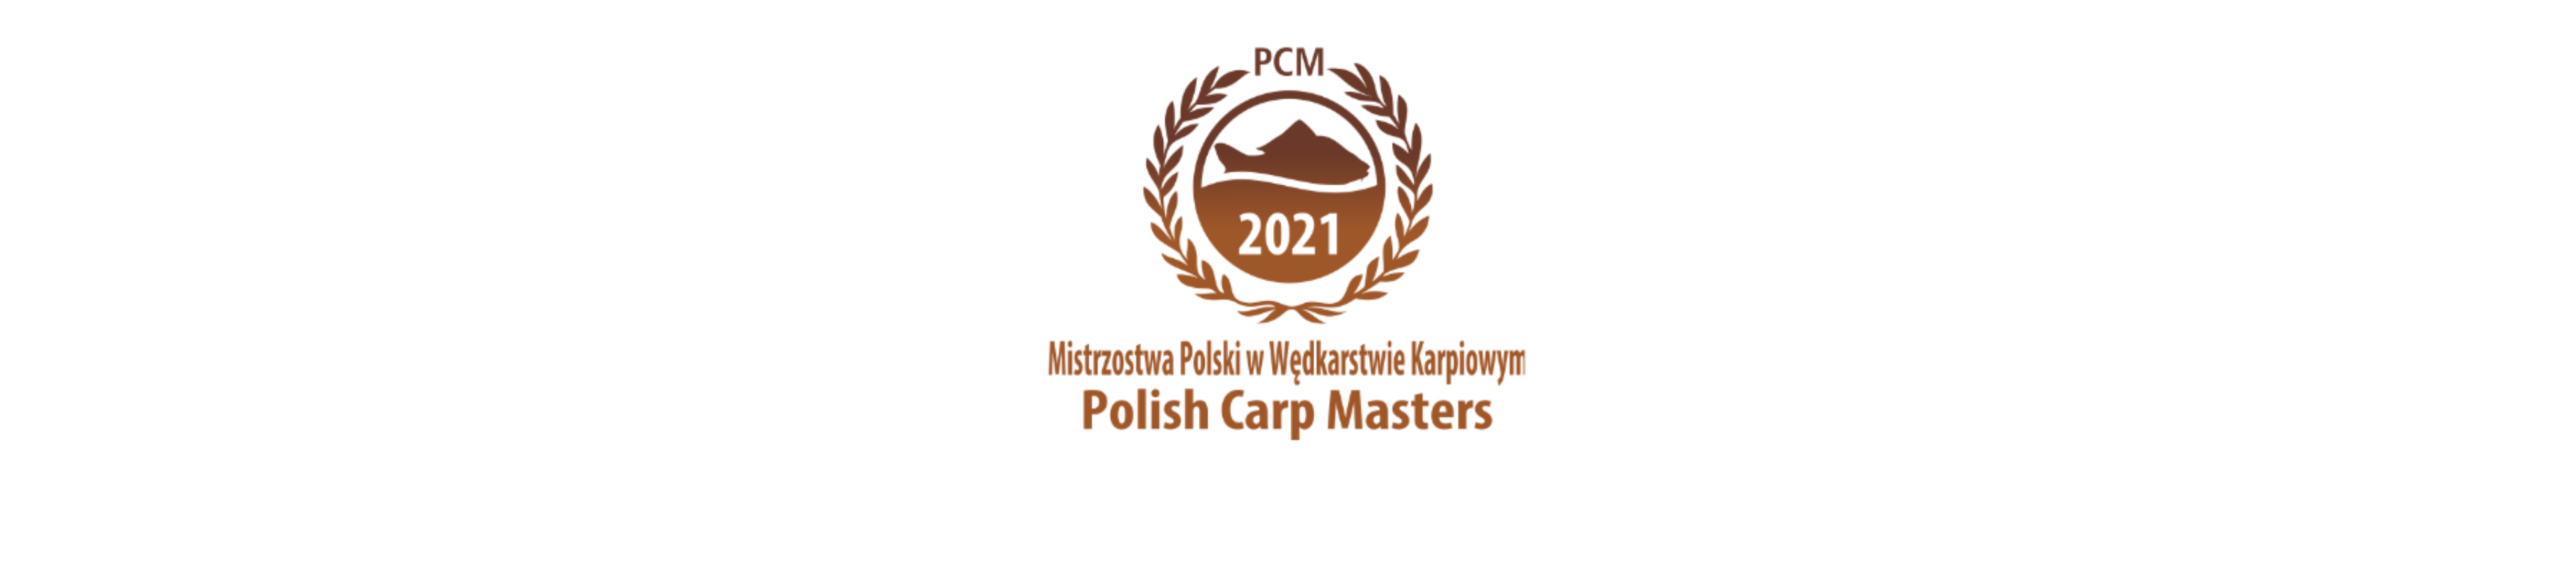 PCM 2021